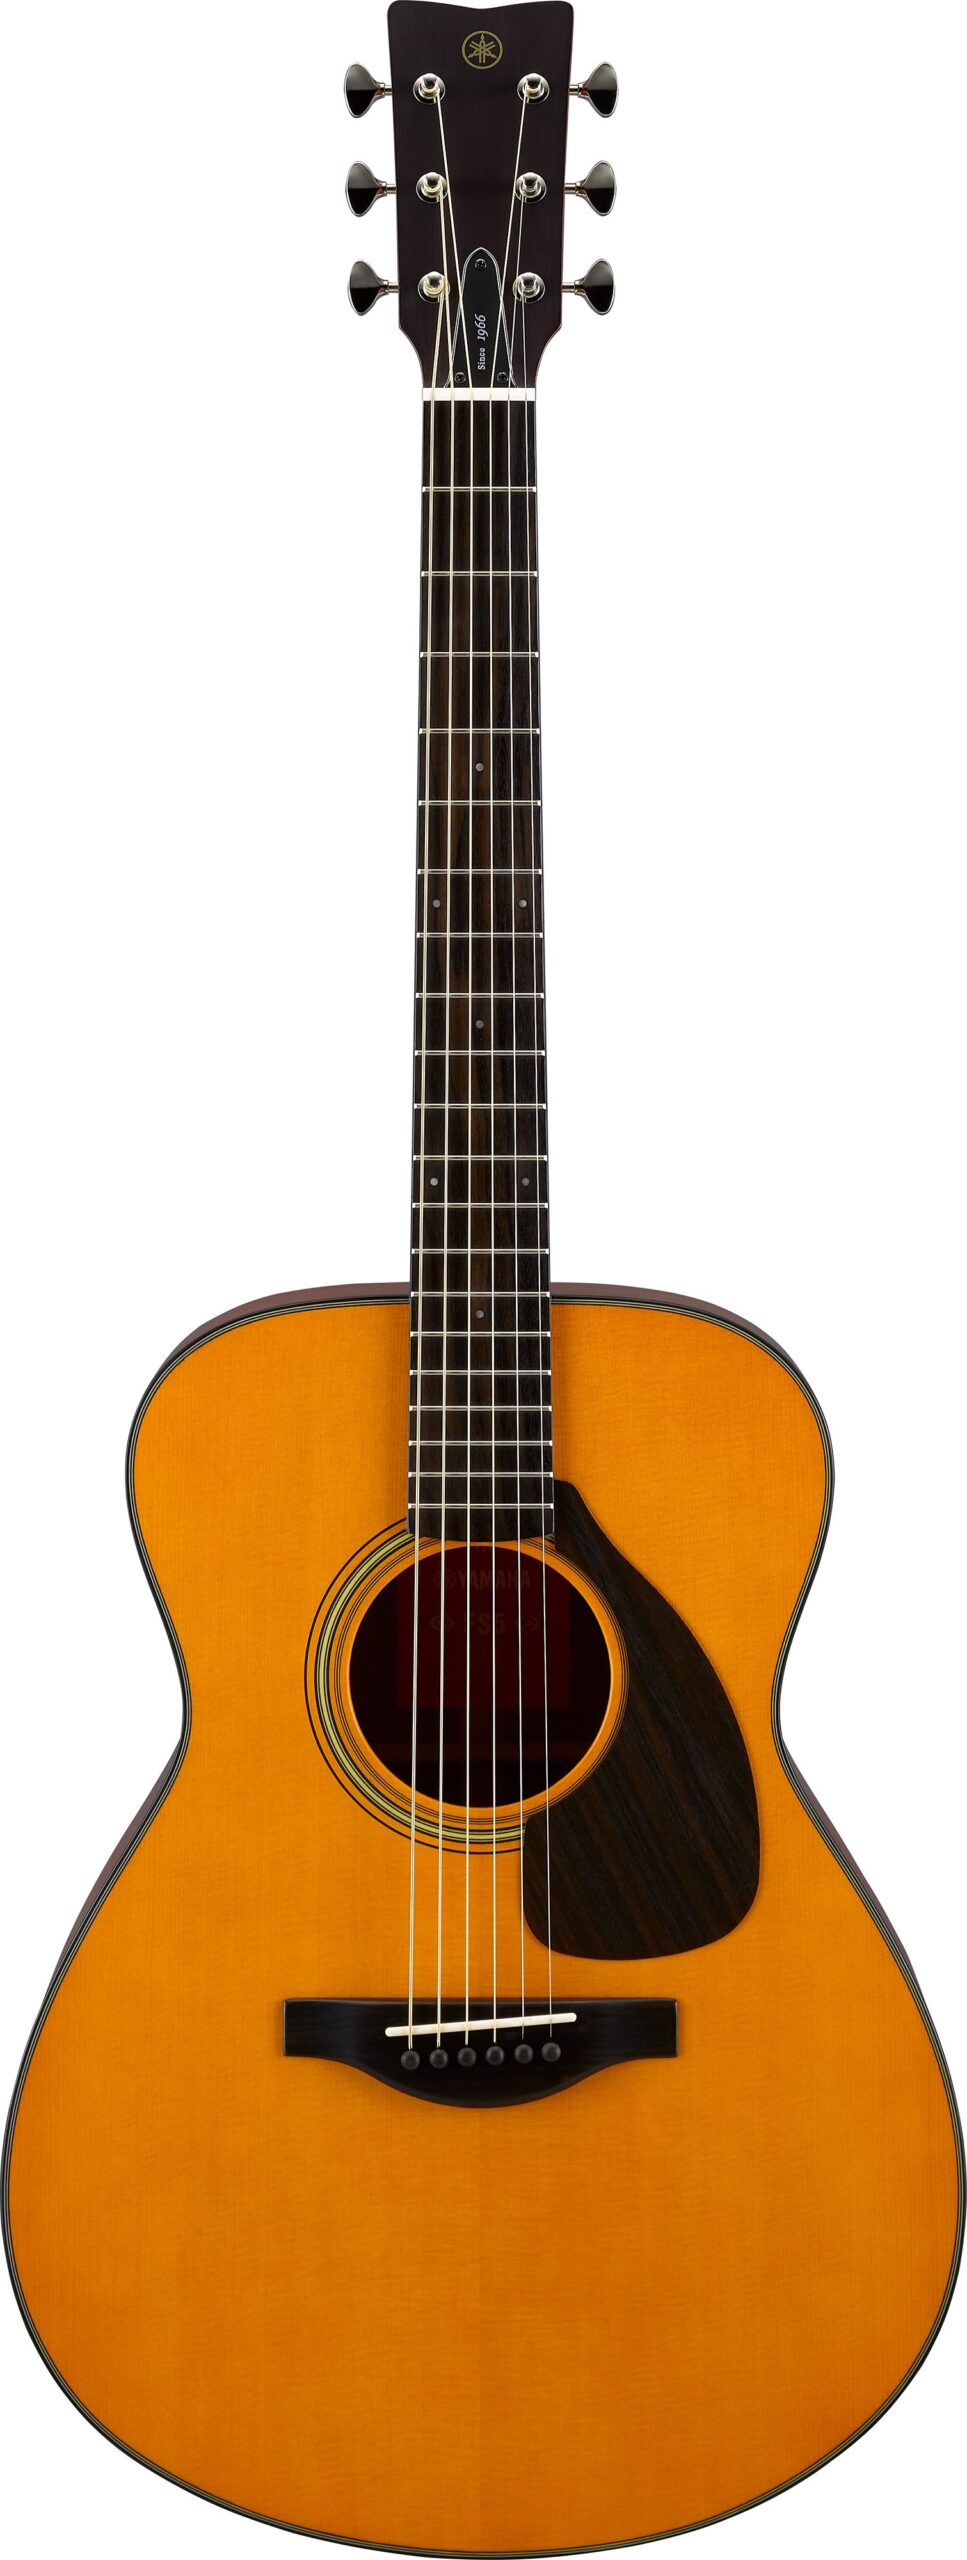 FS5 – Acoustic Guitar